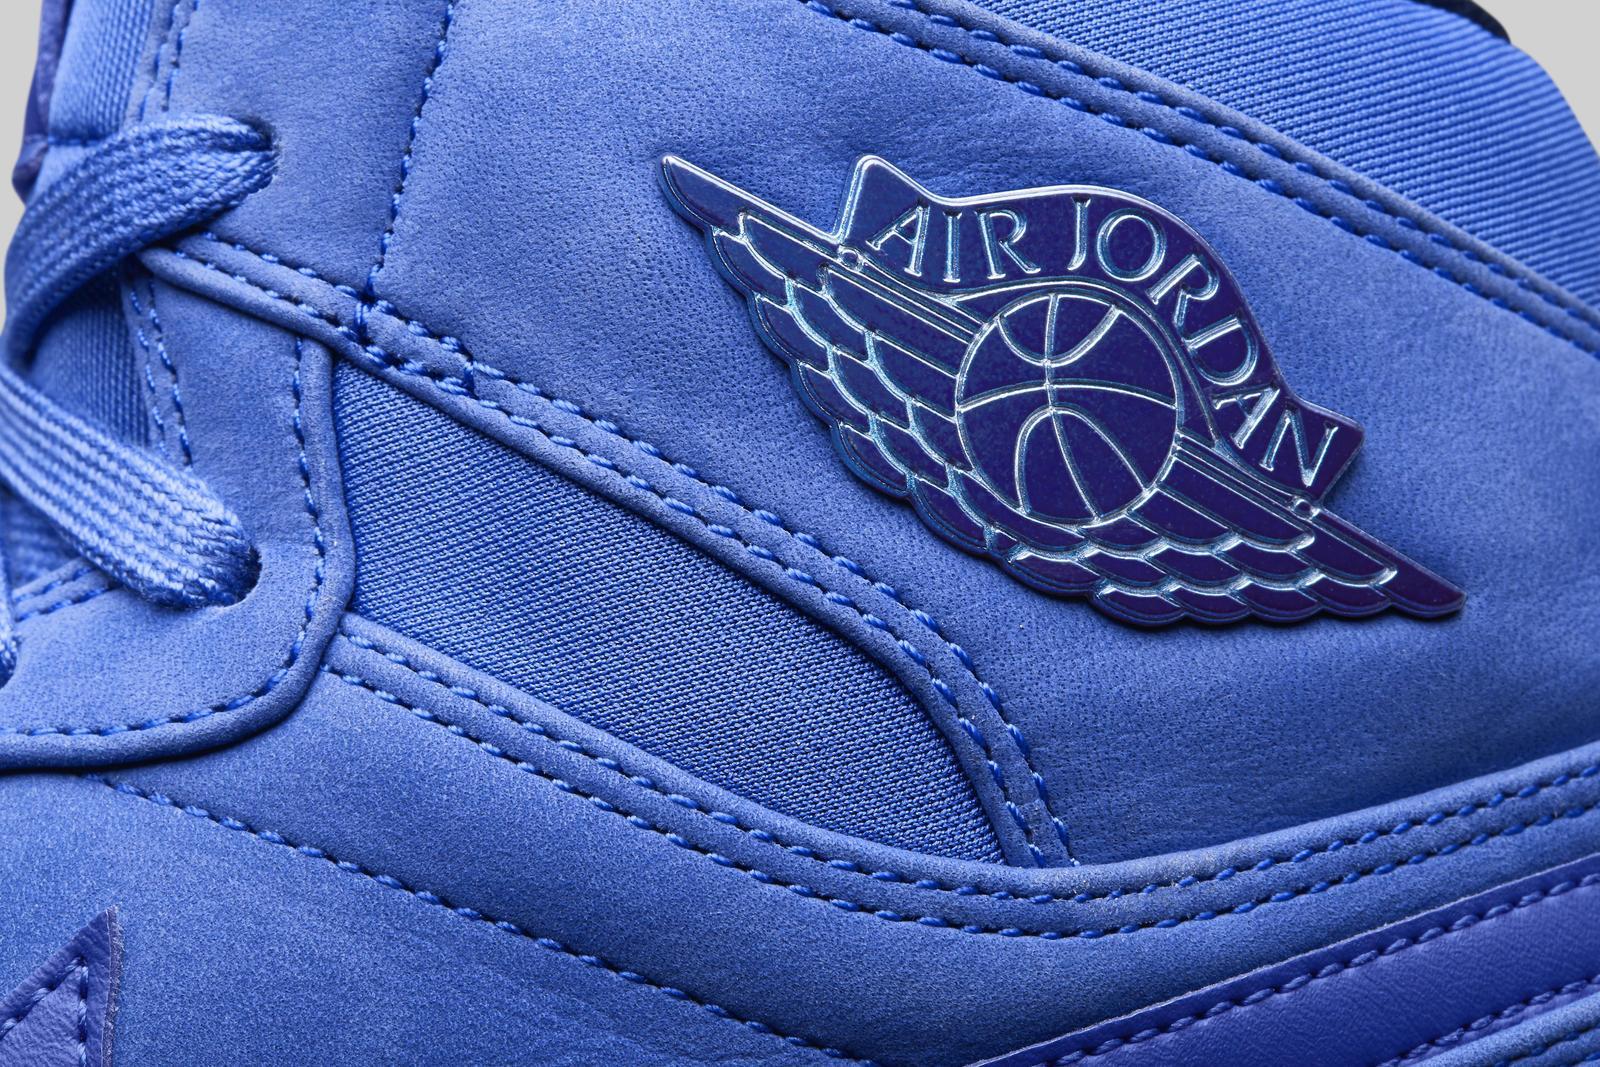 Jordan 1 Logo - Air Jordan 1 racer blue wings logo